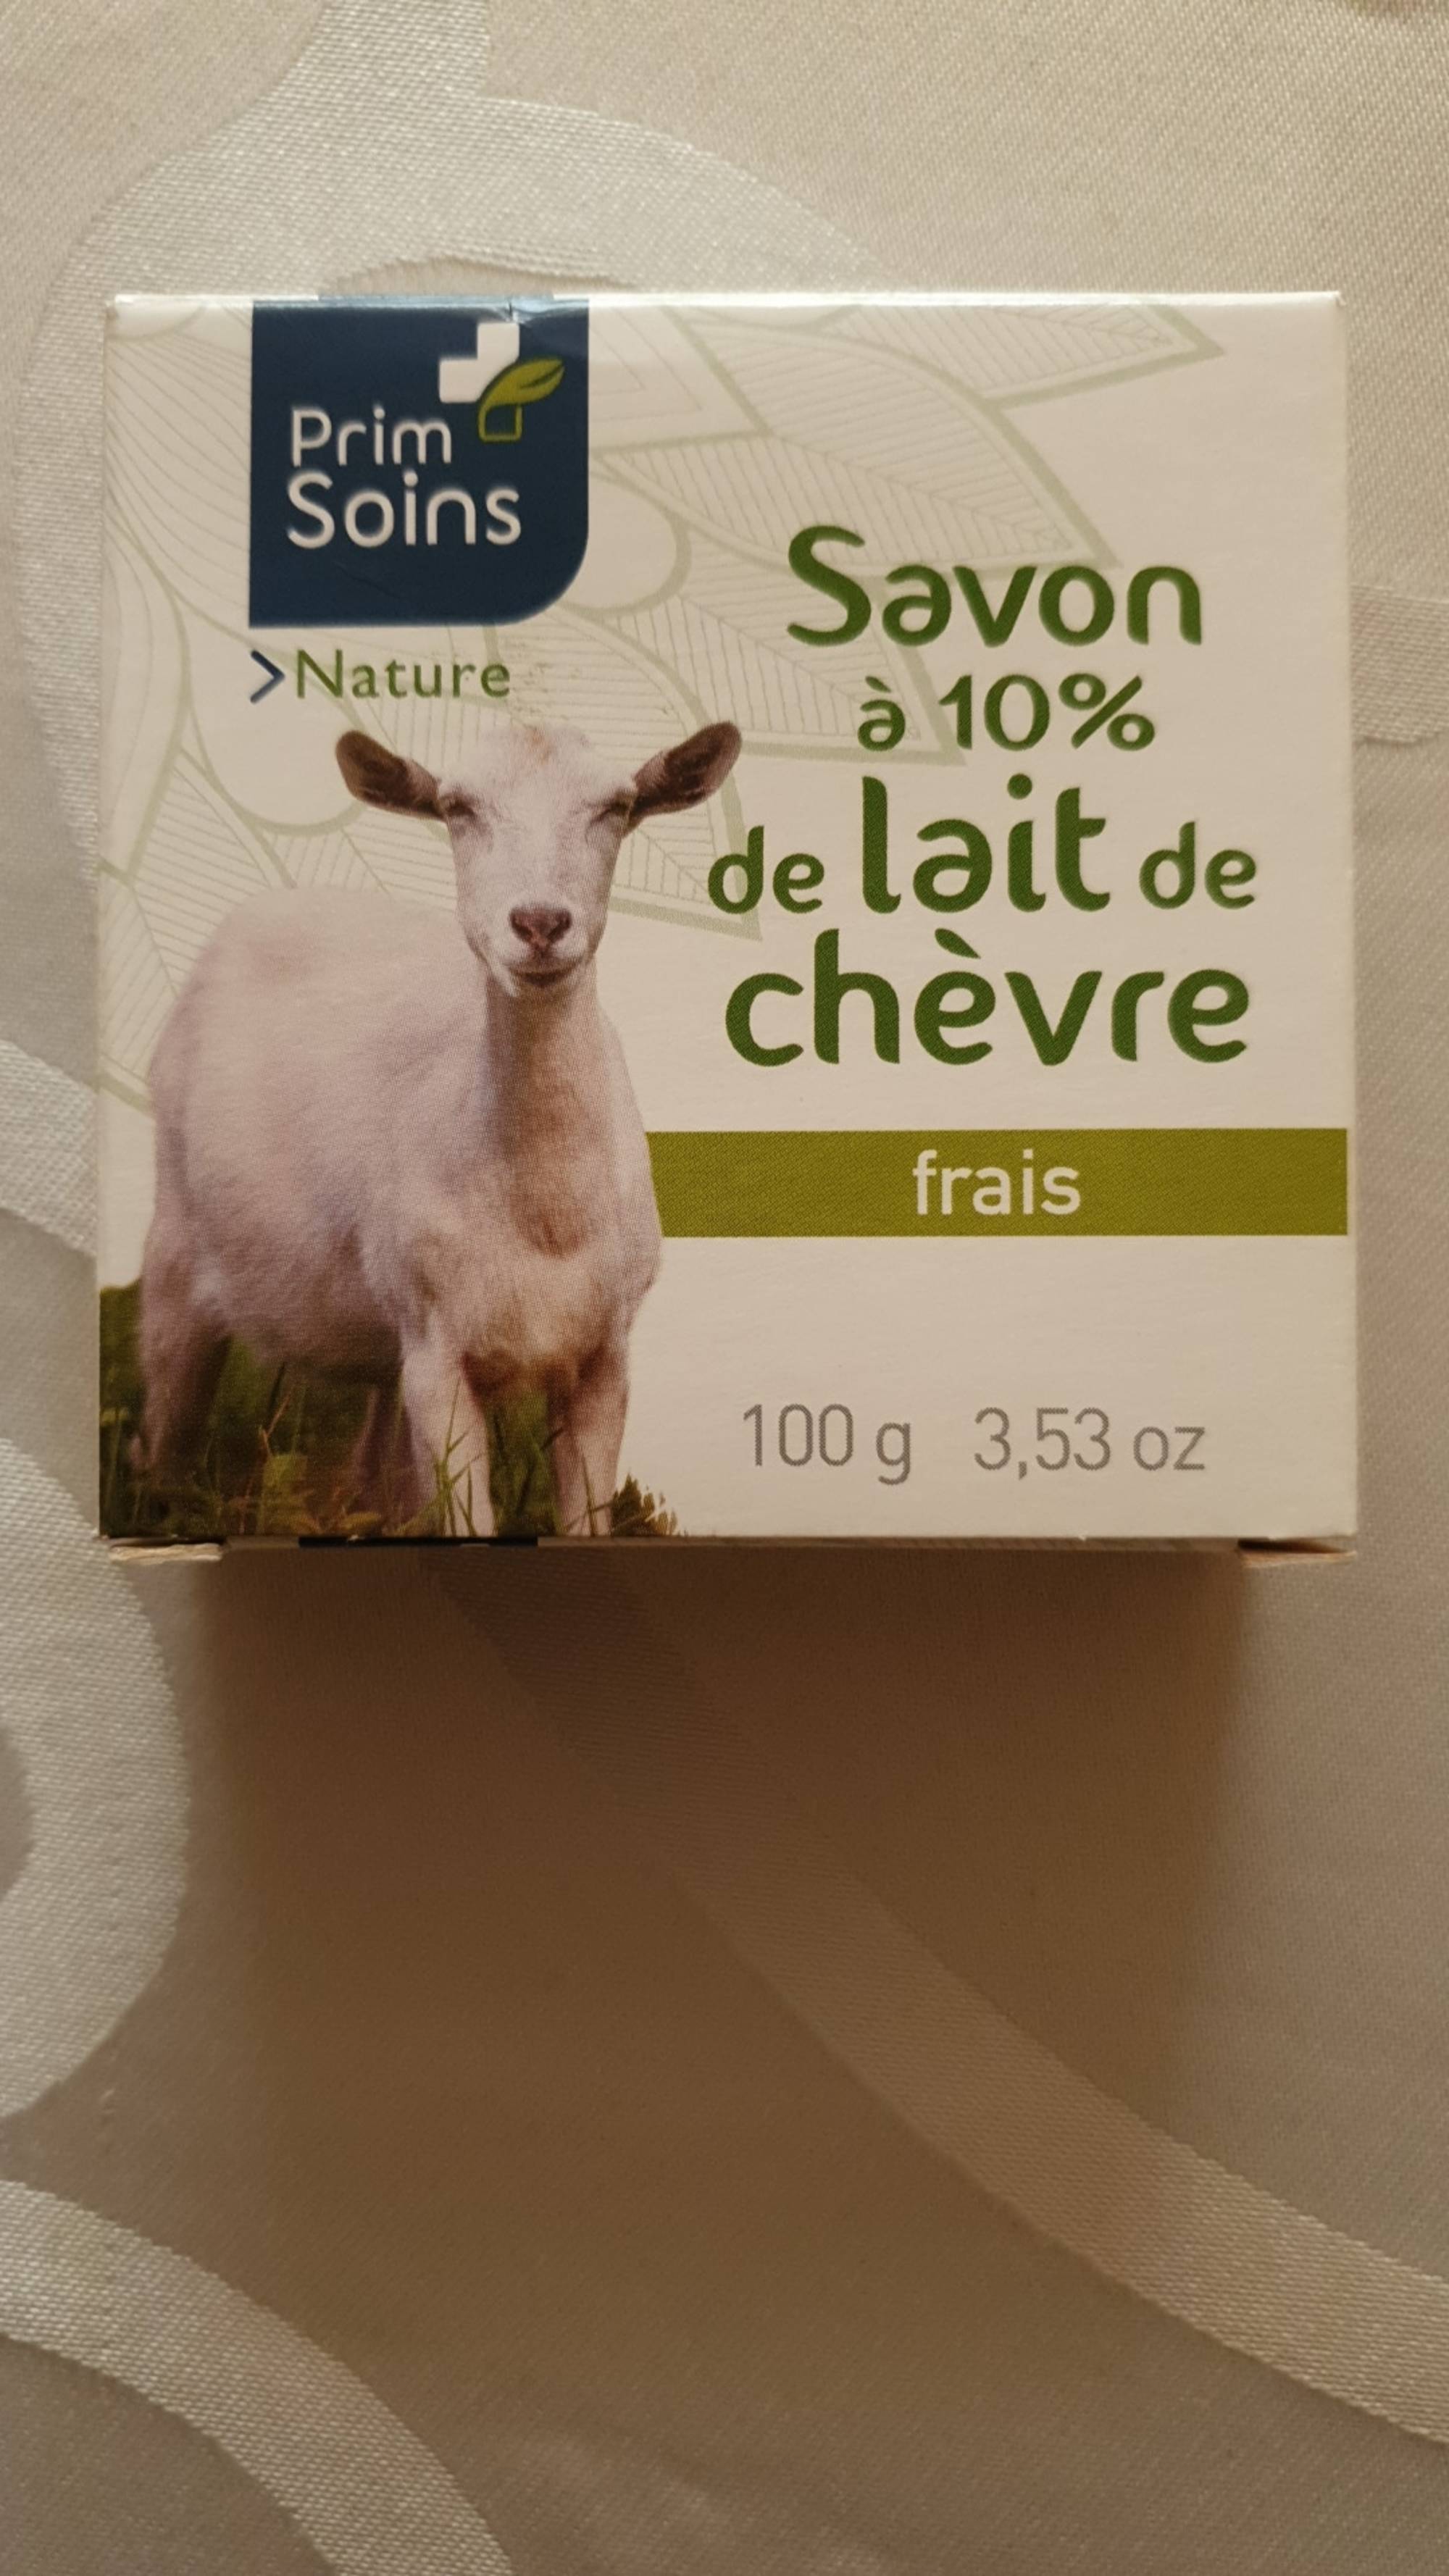 PRIM'SOINS - Nature - Savon à 10% de lait de chèvre frais 